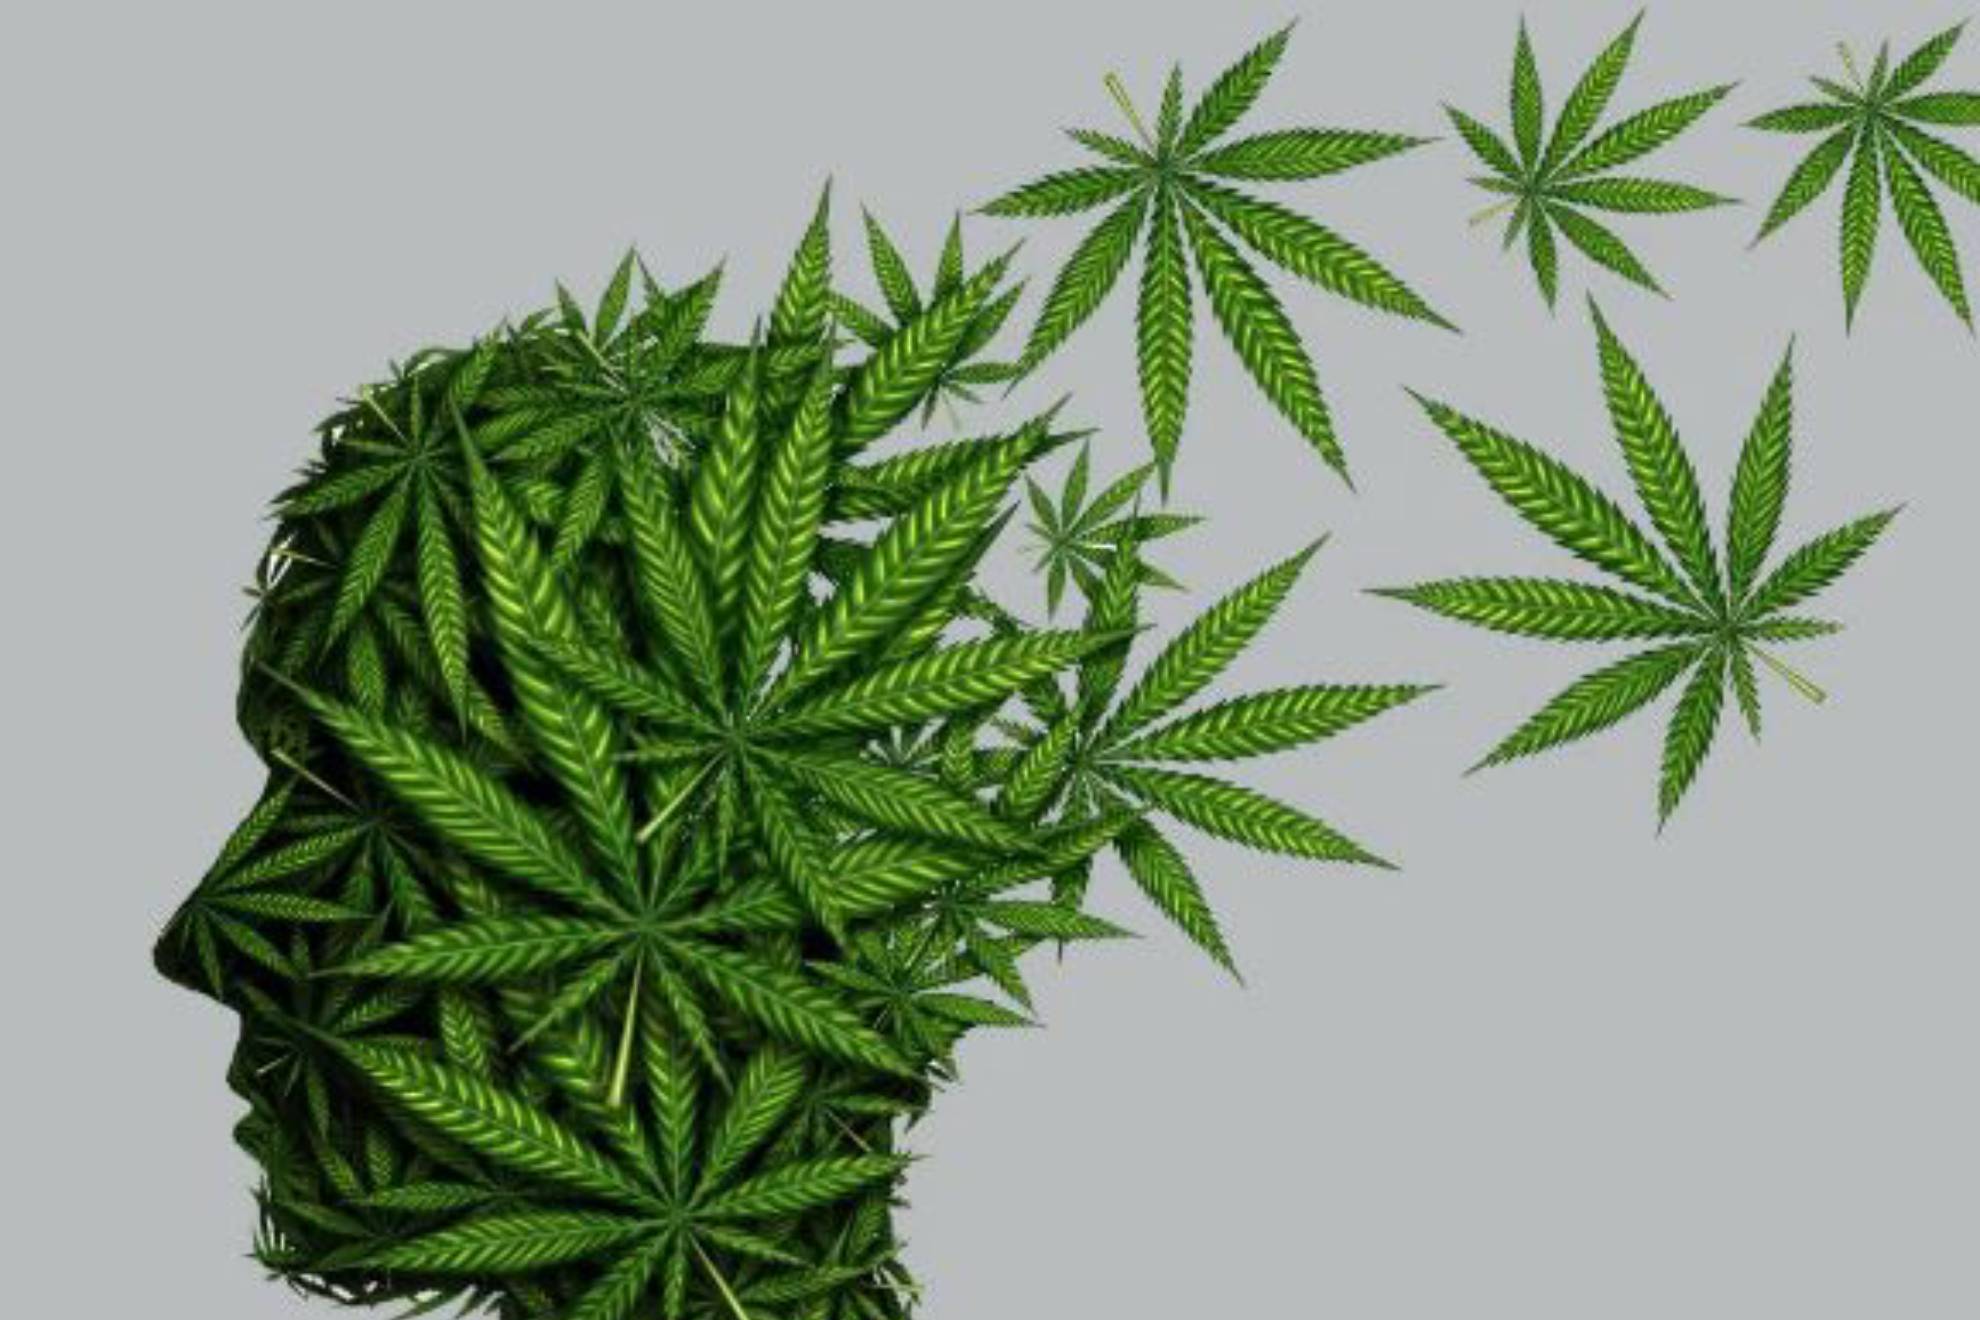 Prdida de memoria por consumo de cannabis? Depende de estos factores